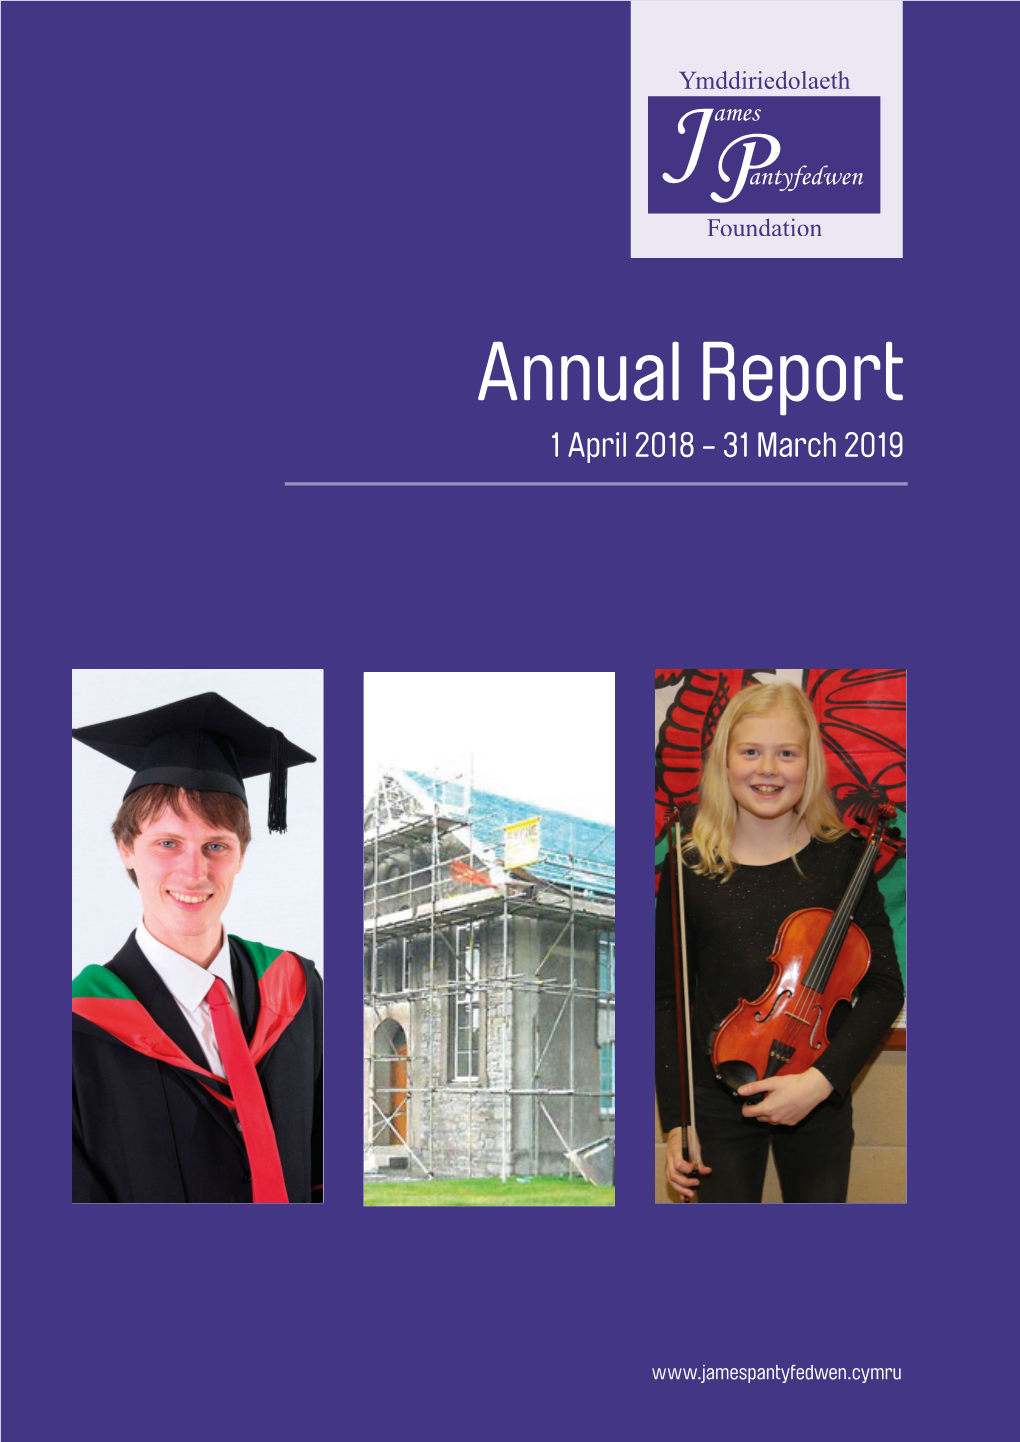 Annual Report 1 April 2018 - 31 March 2019